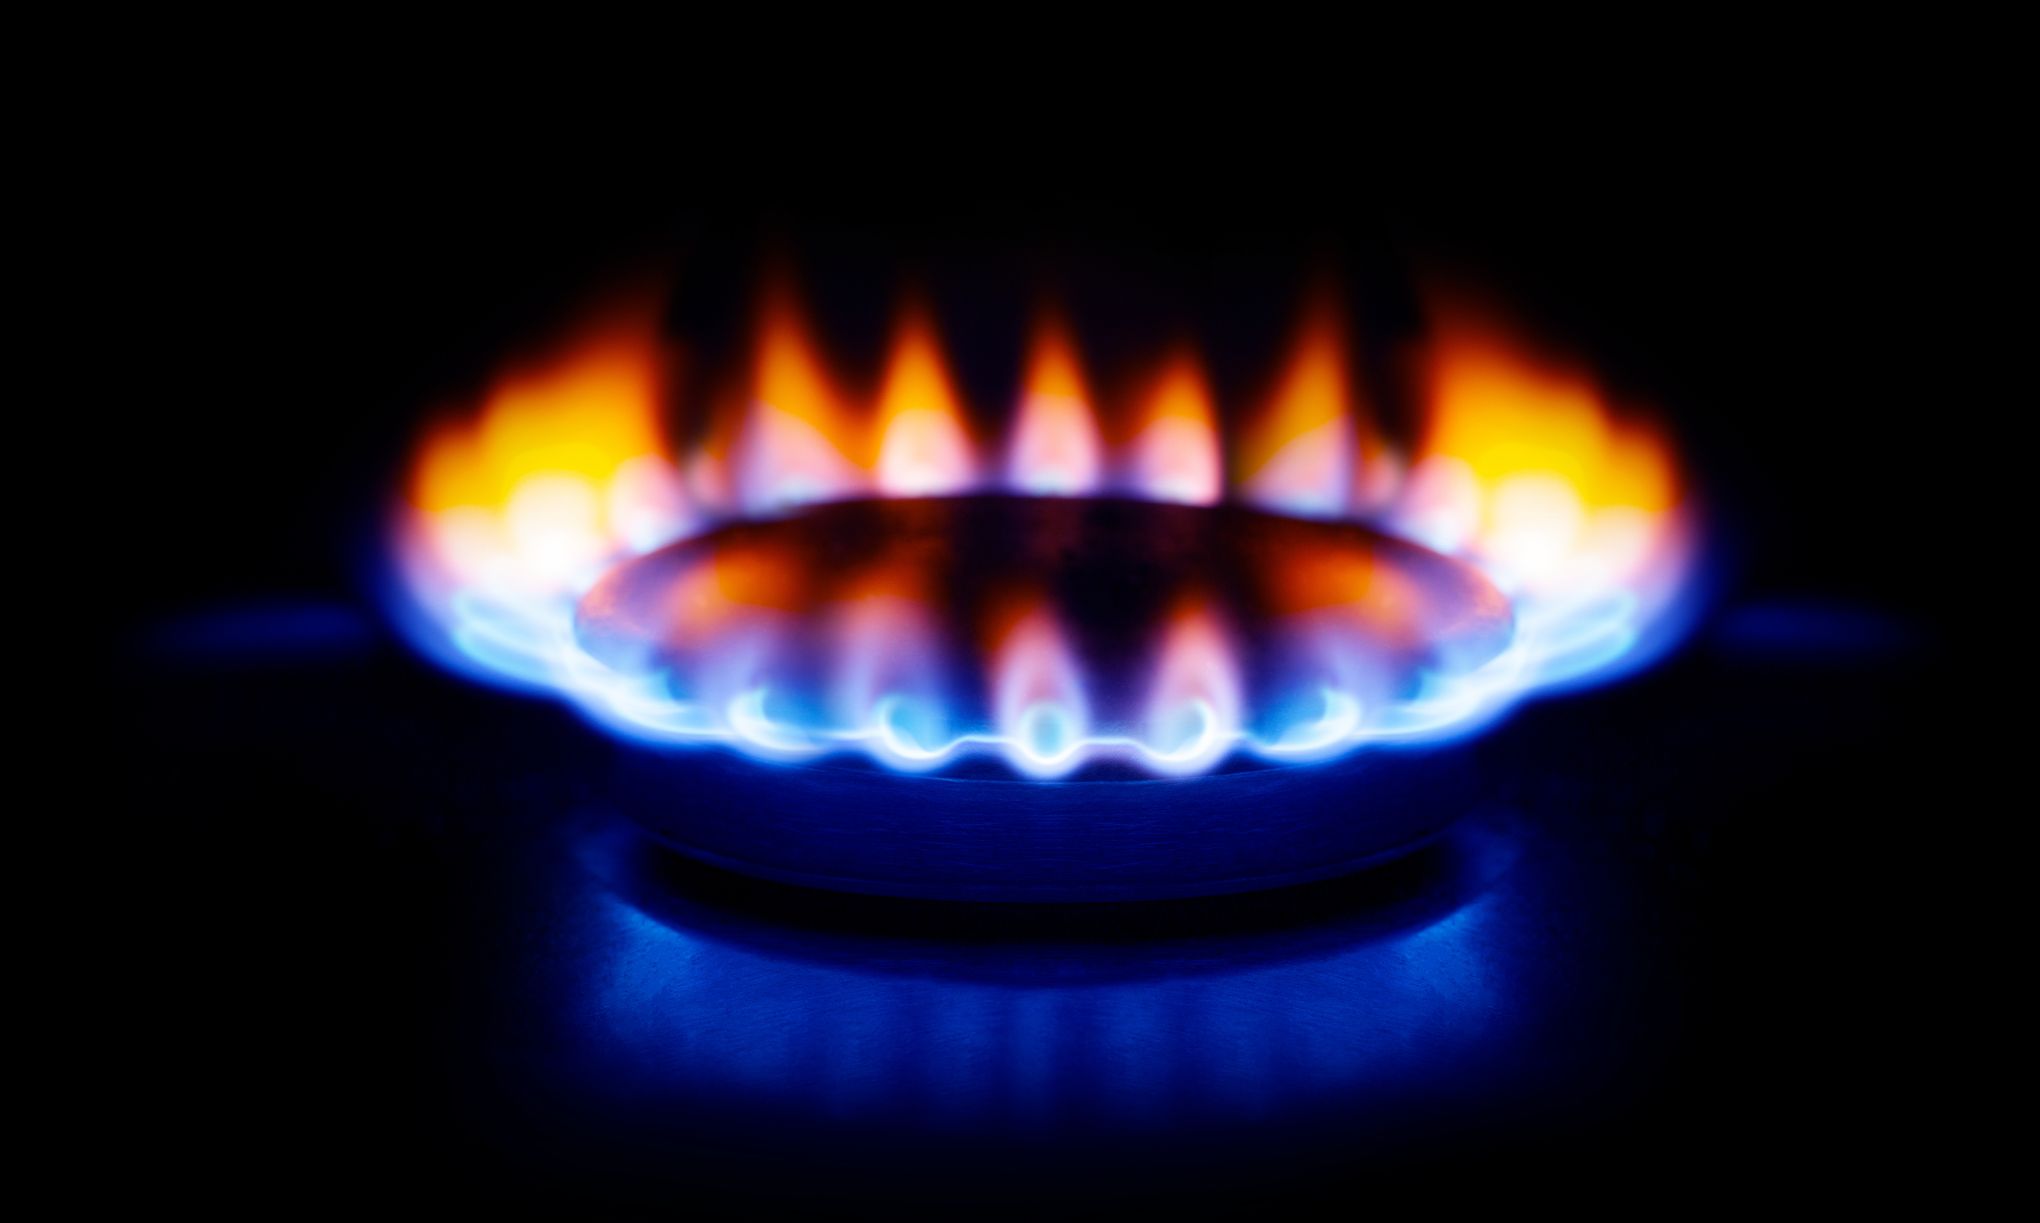 Les abonnés au gaz risquent de payer leur facture plus cher